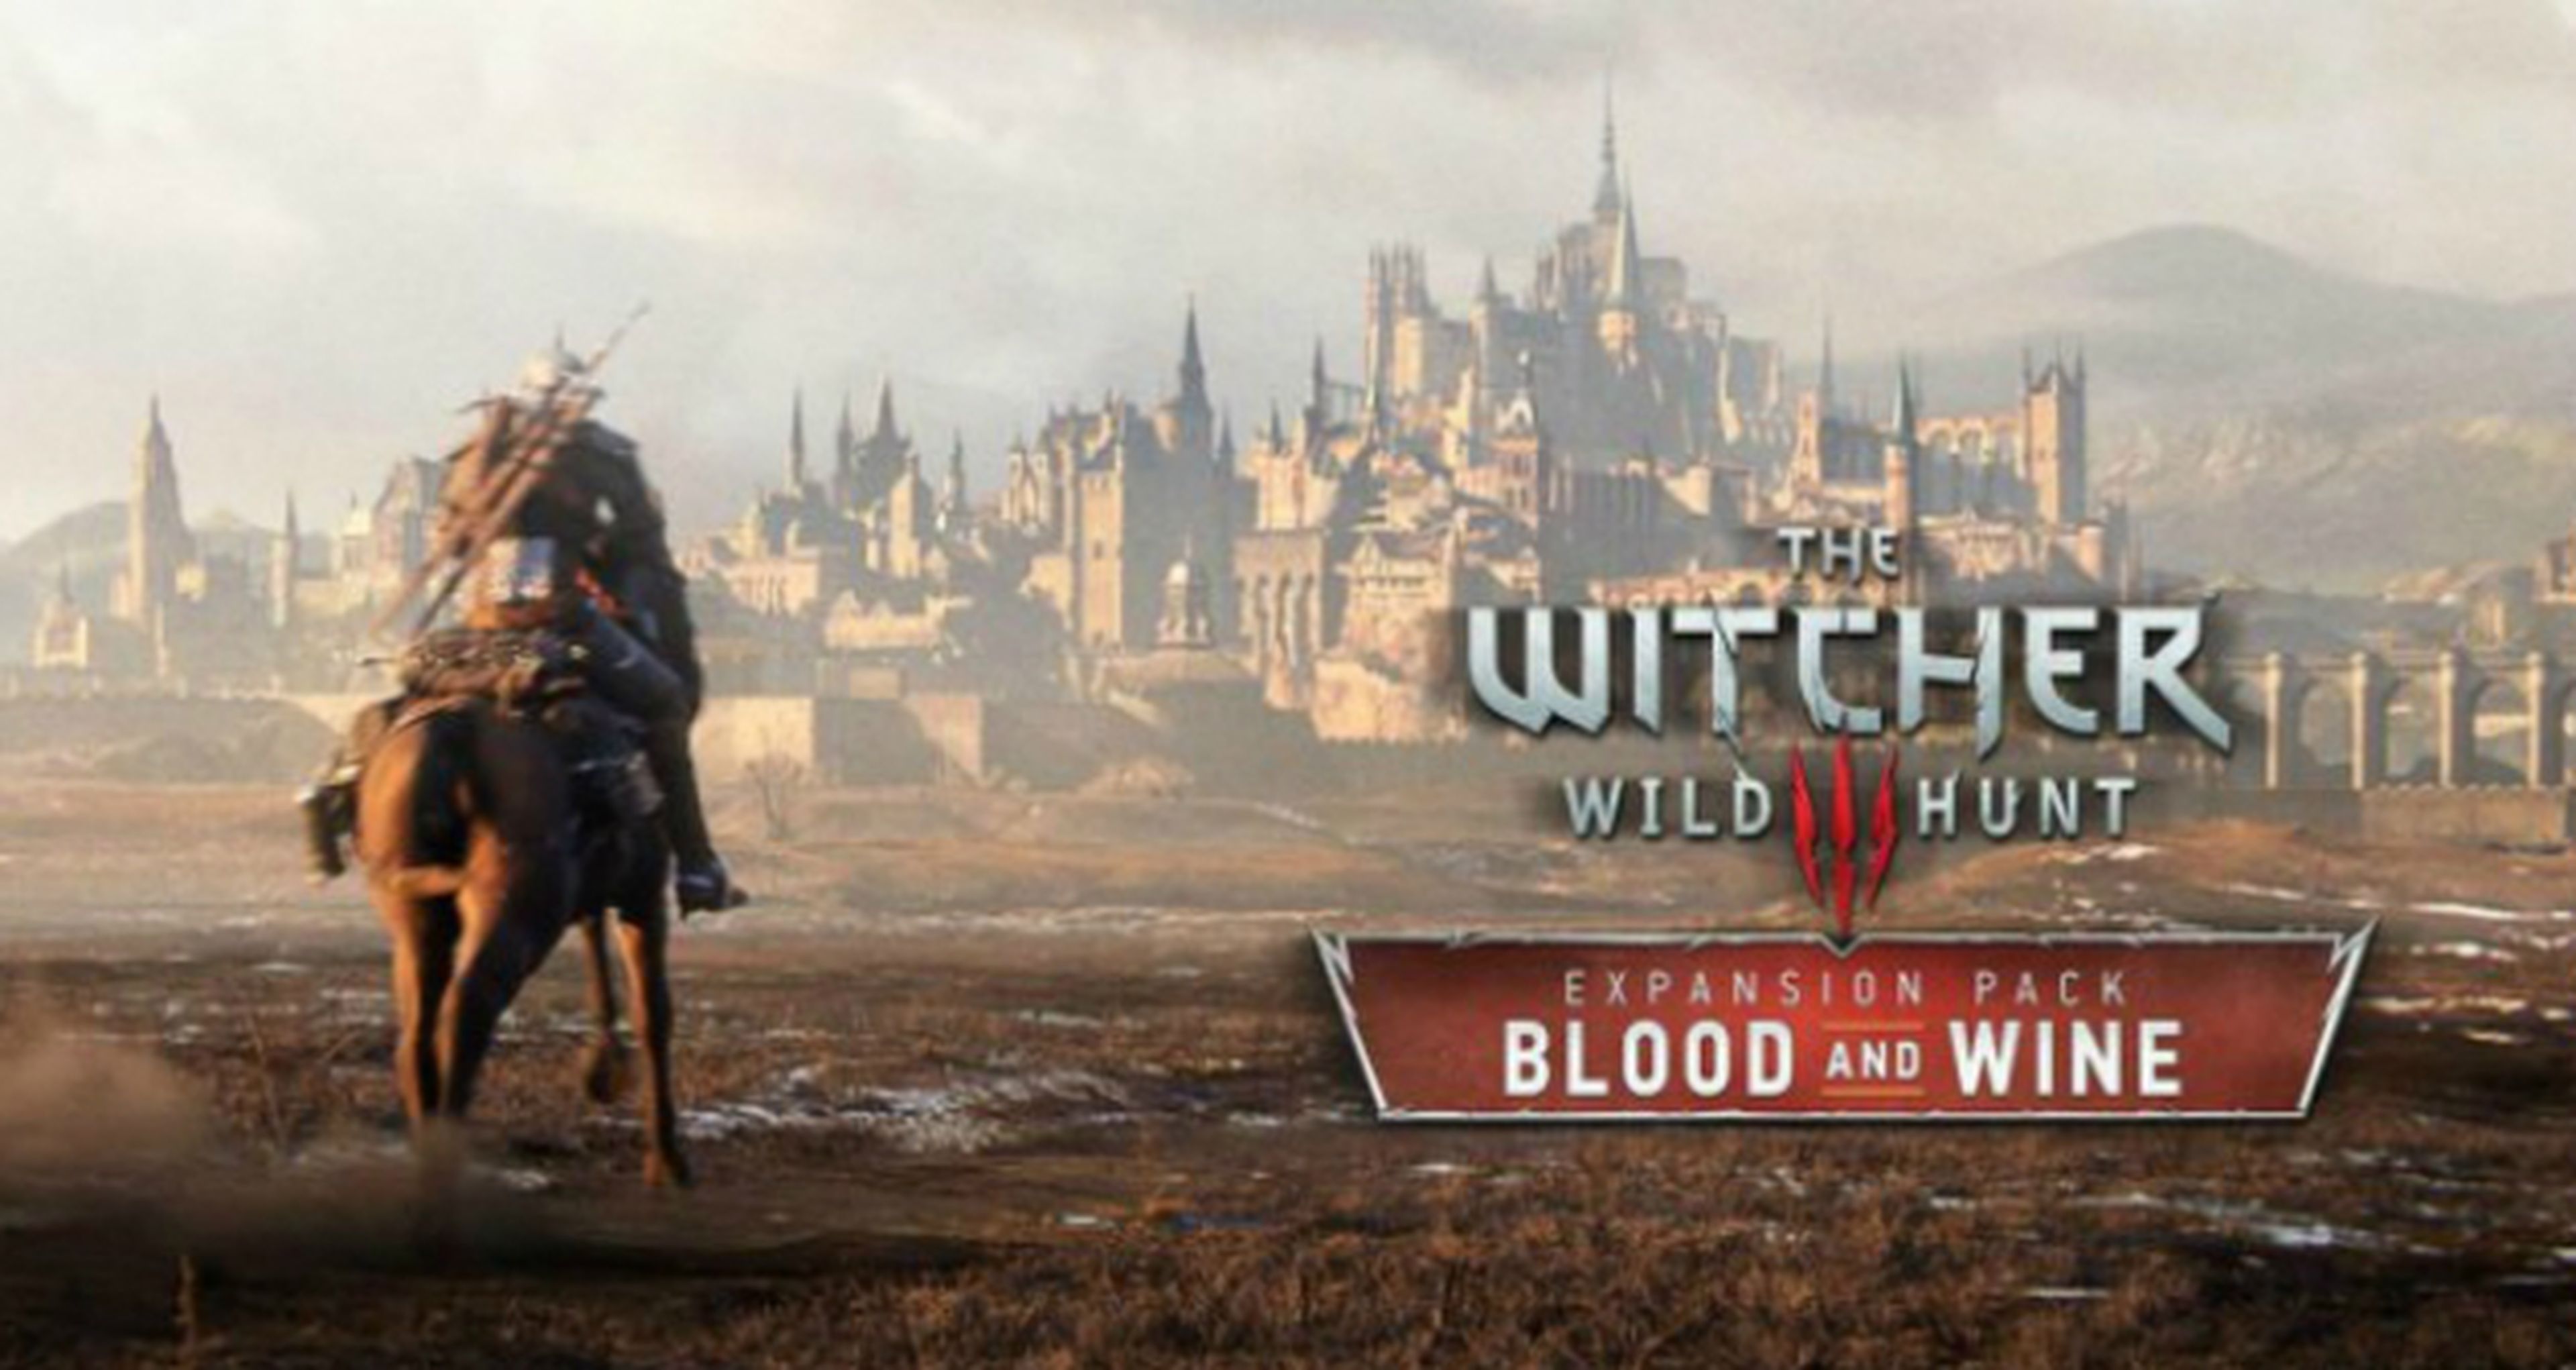 The Witcher 3, la expansión Blood and Wine incluirá nuevas funciones